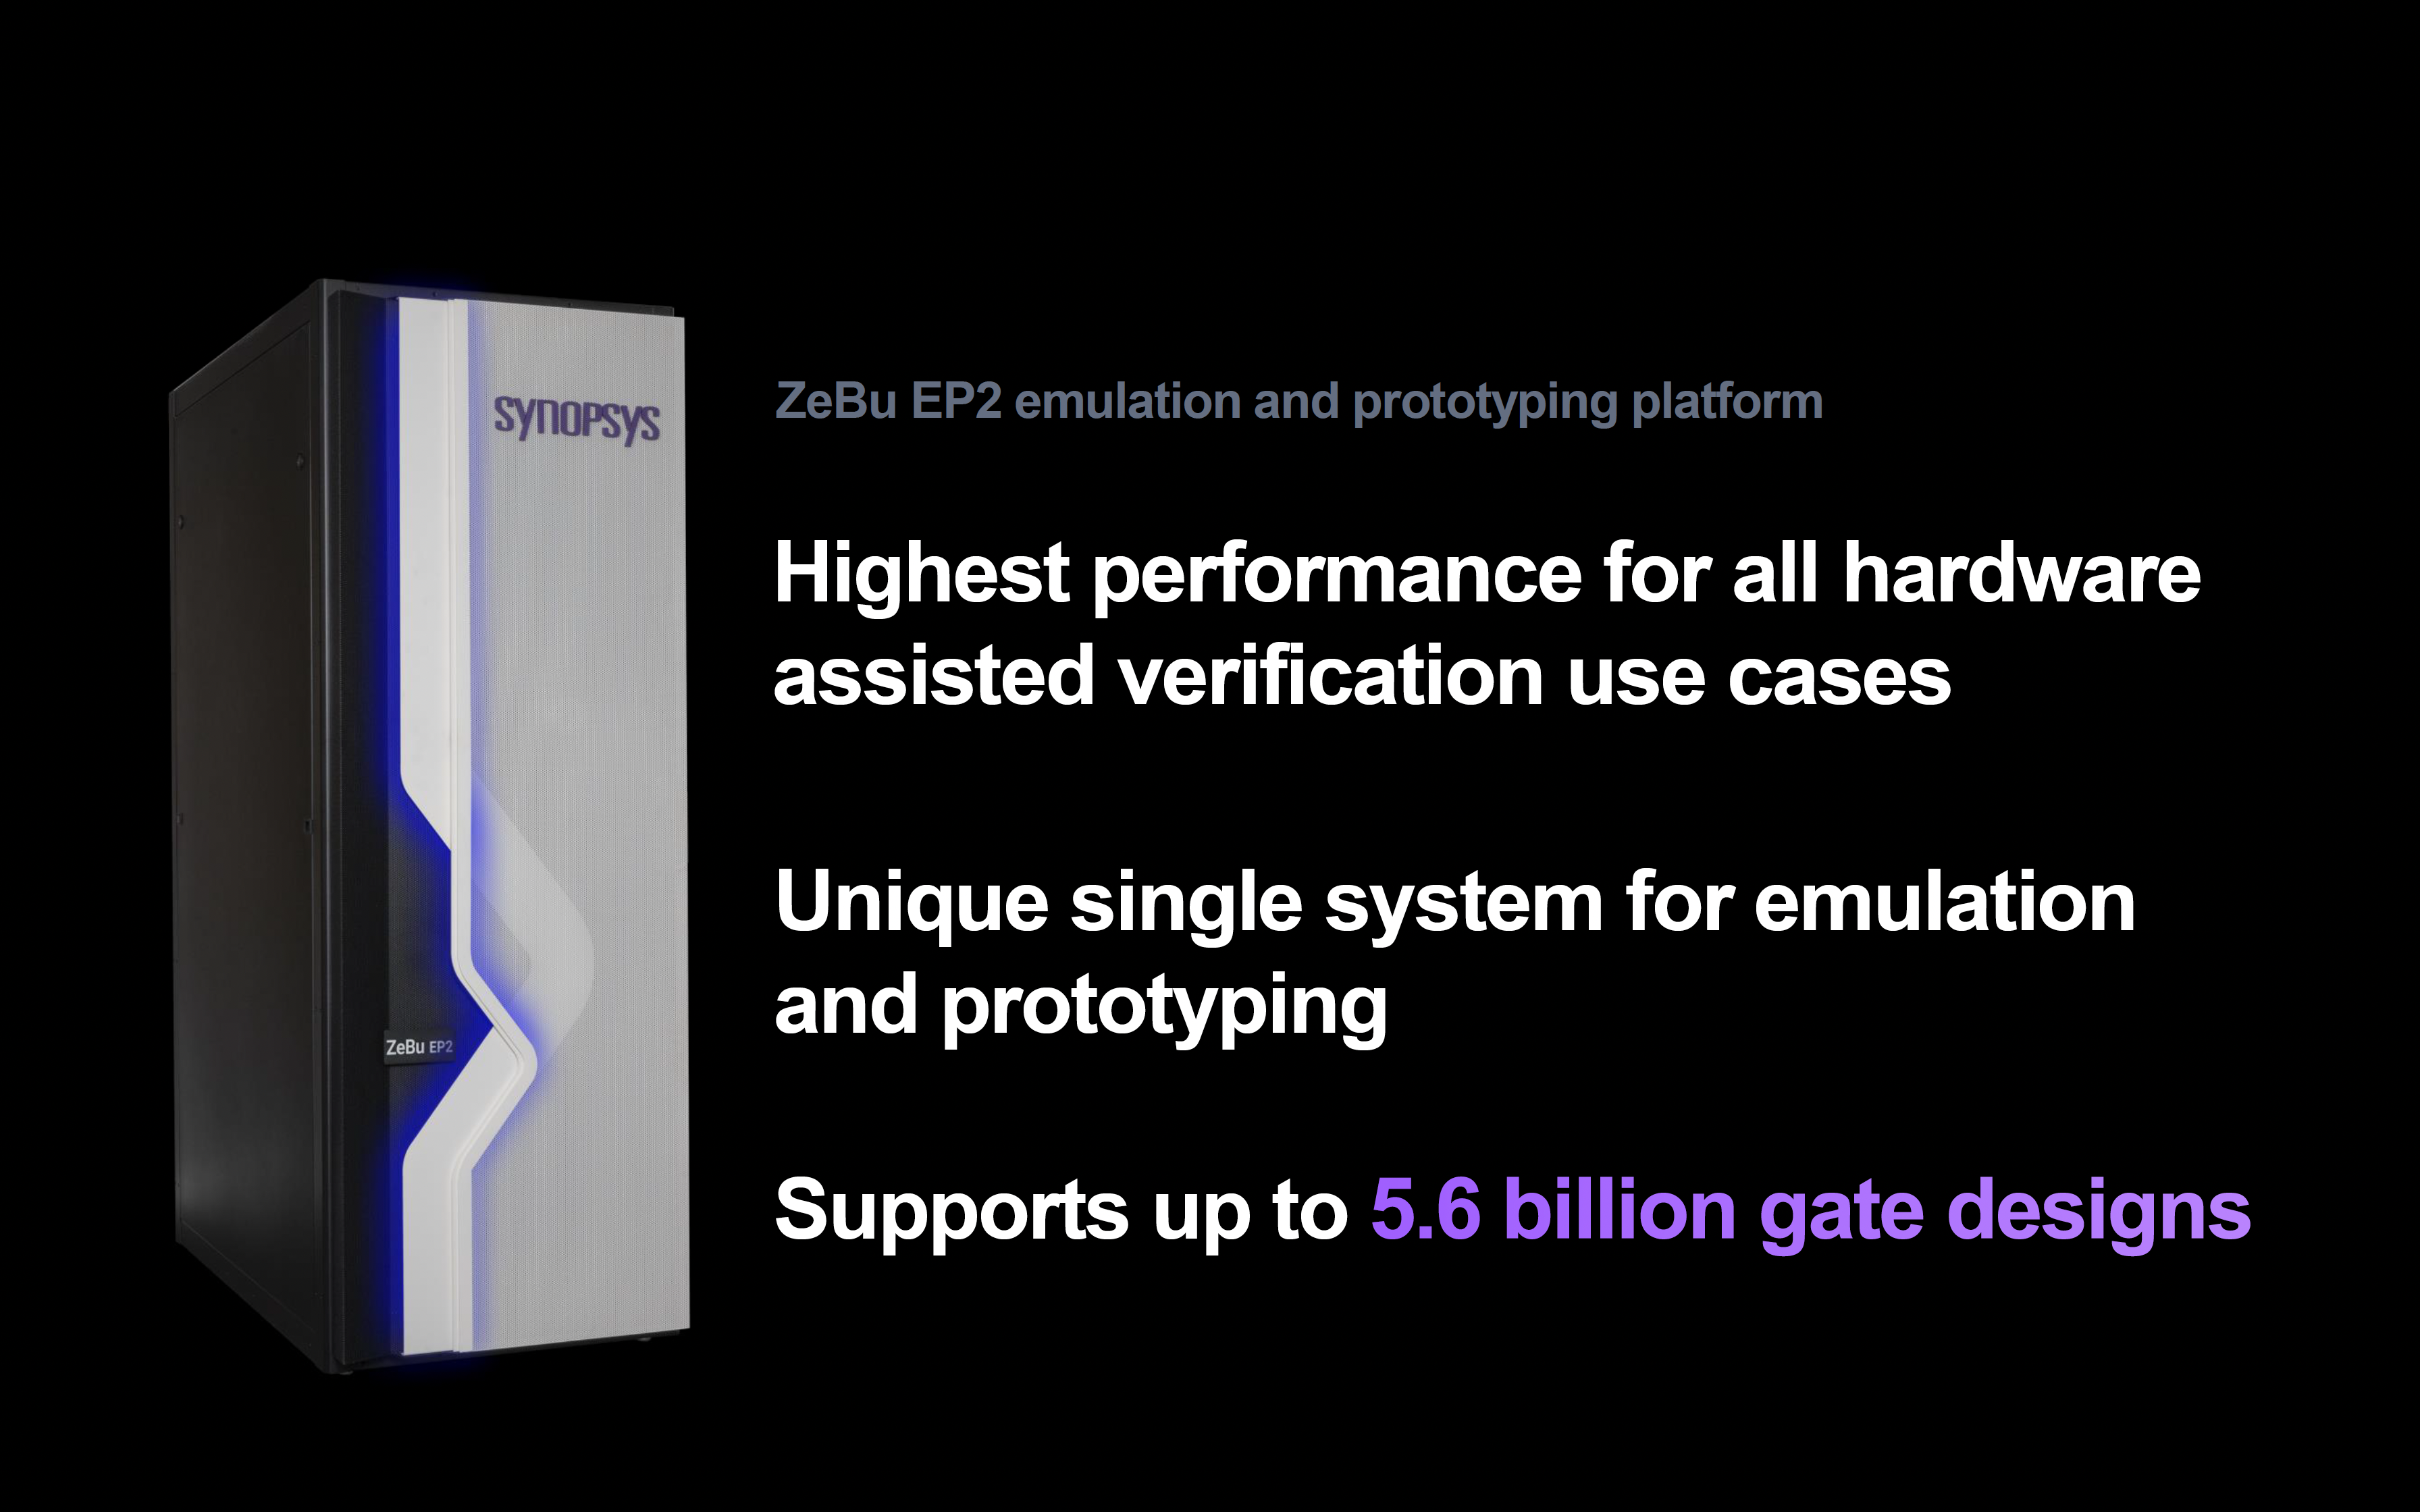 Zebu EP2 エミュレーションおよびプロトタイピング プラットフォーム